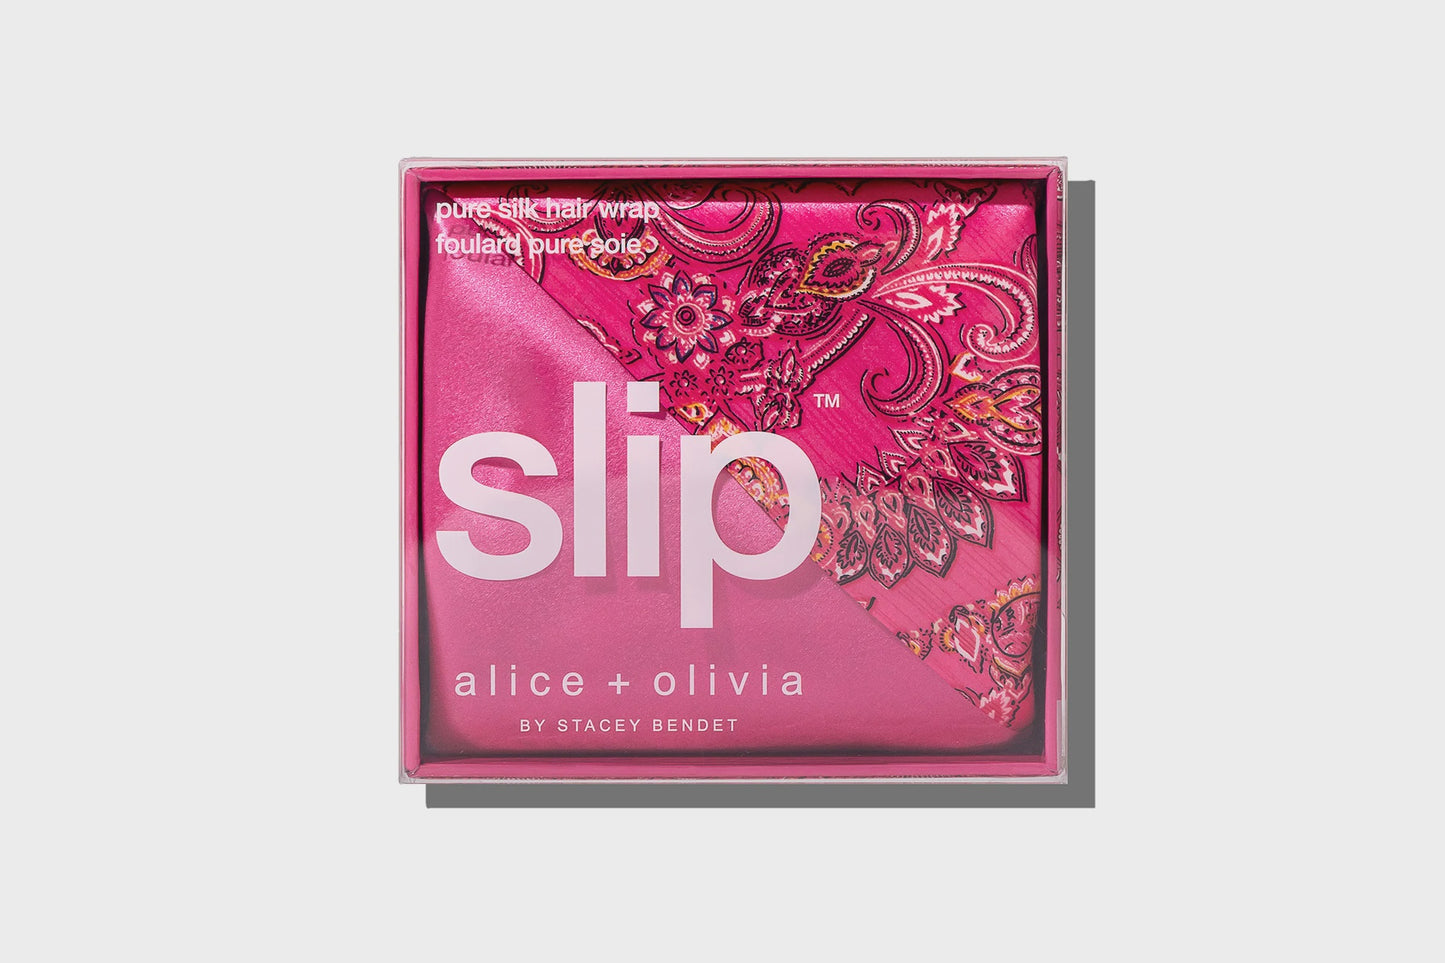 Slip x Alice & Olivia - Spring time hair wrap